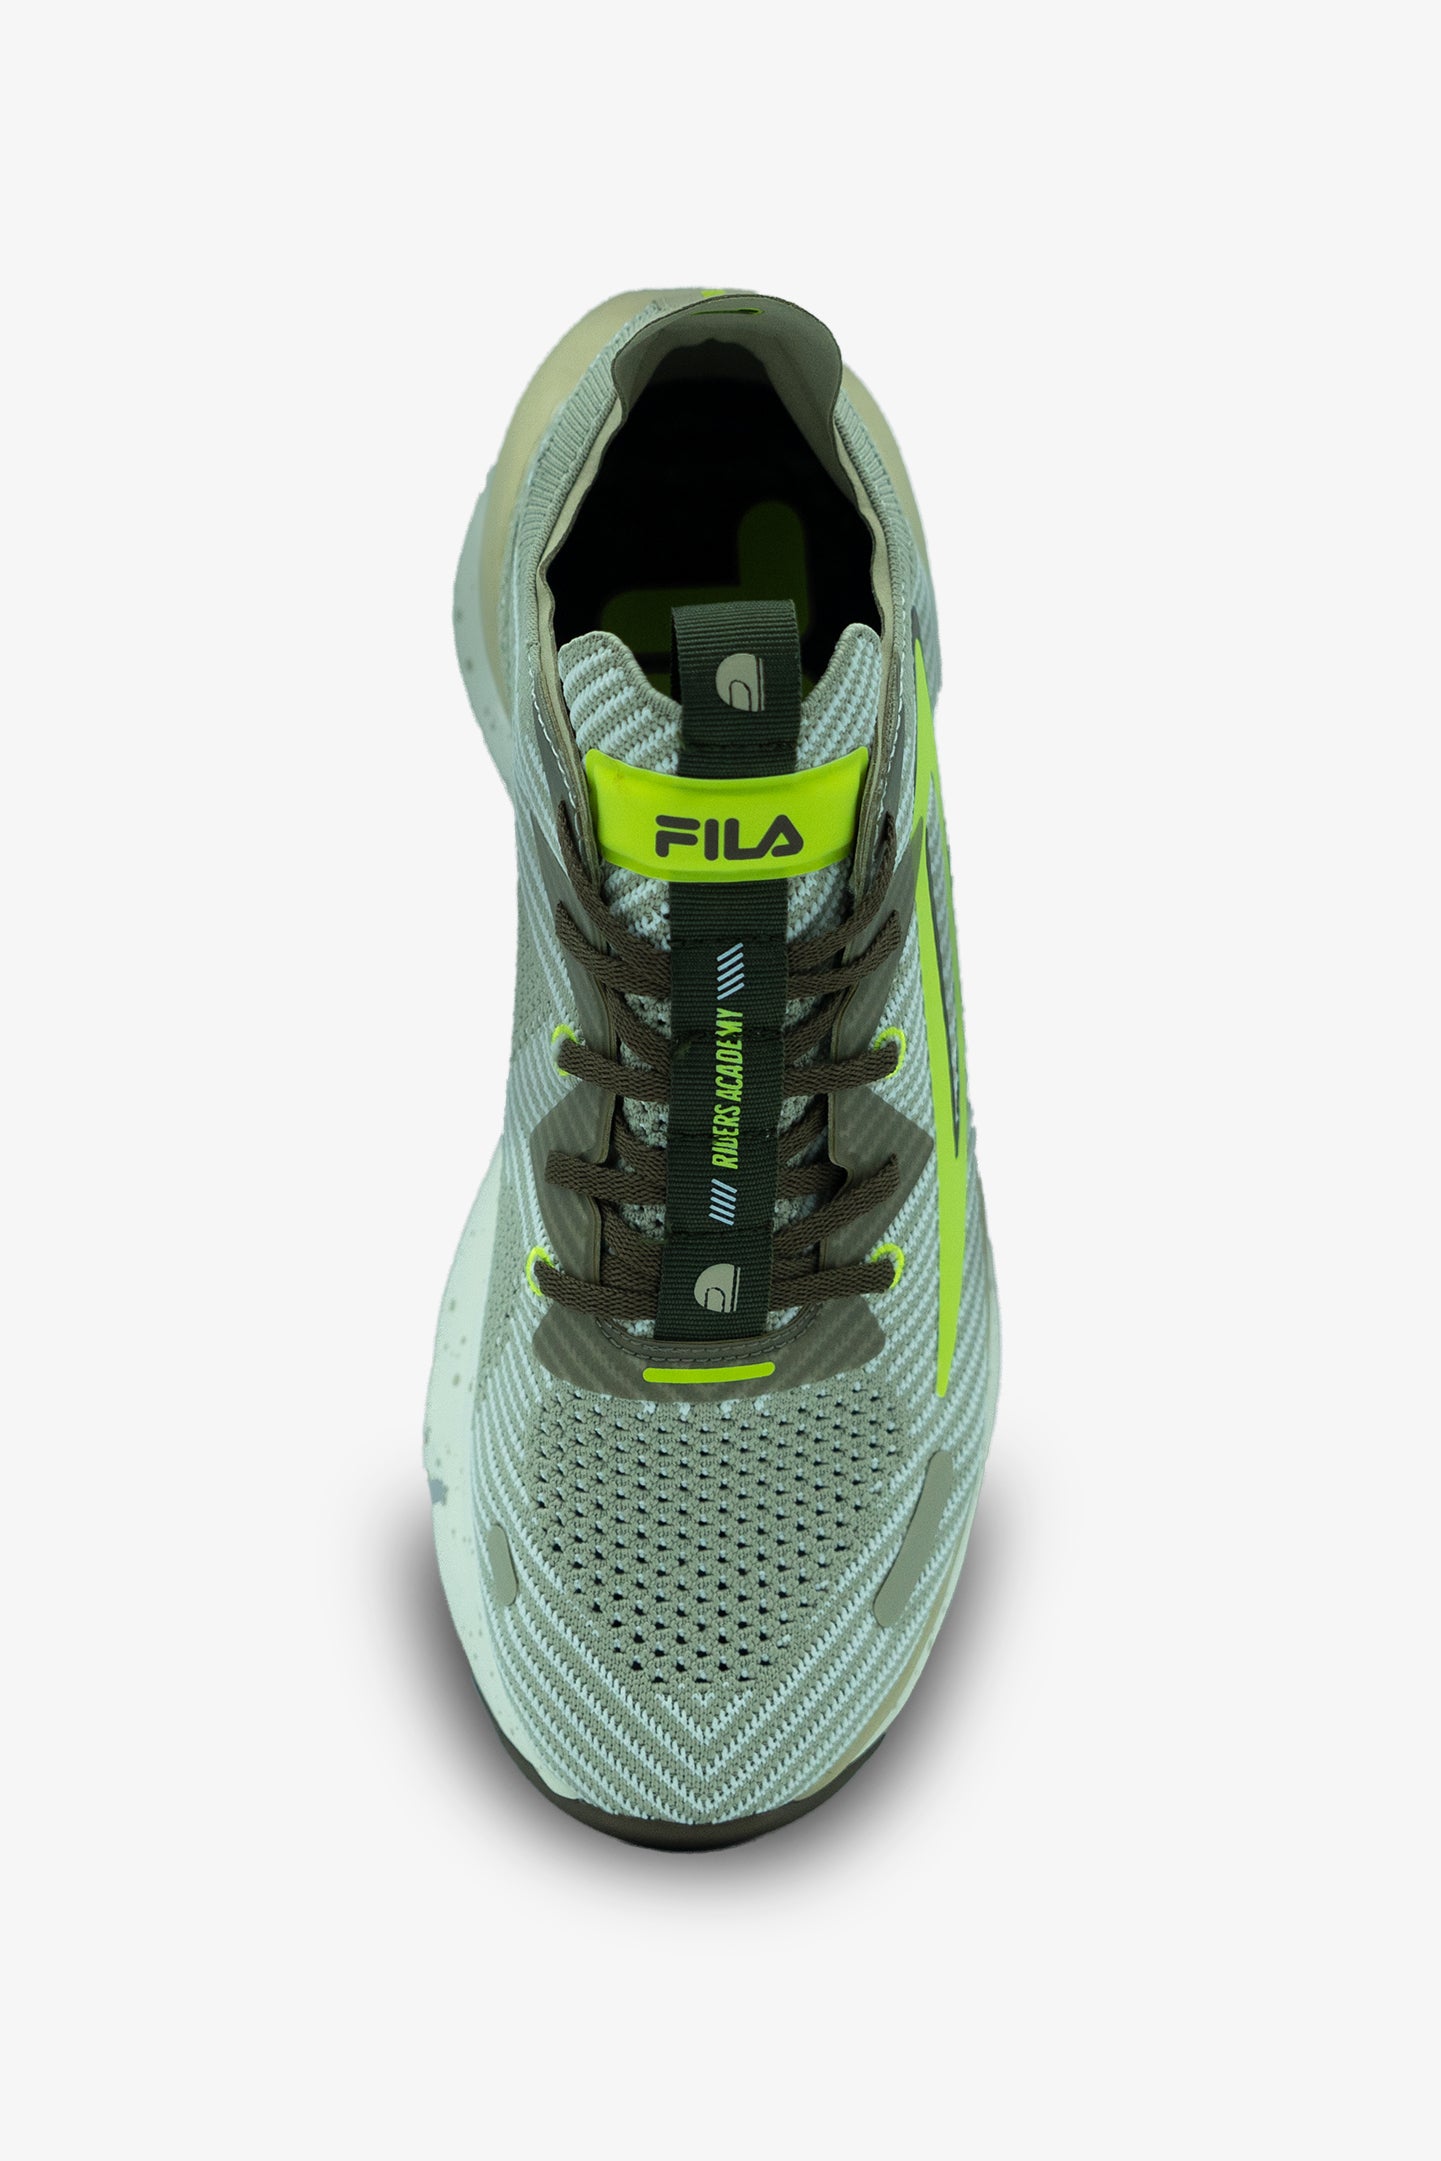 Fila KJ7 Athletic Shoes for Men | Mercari